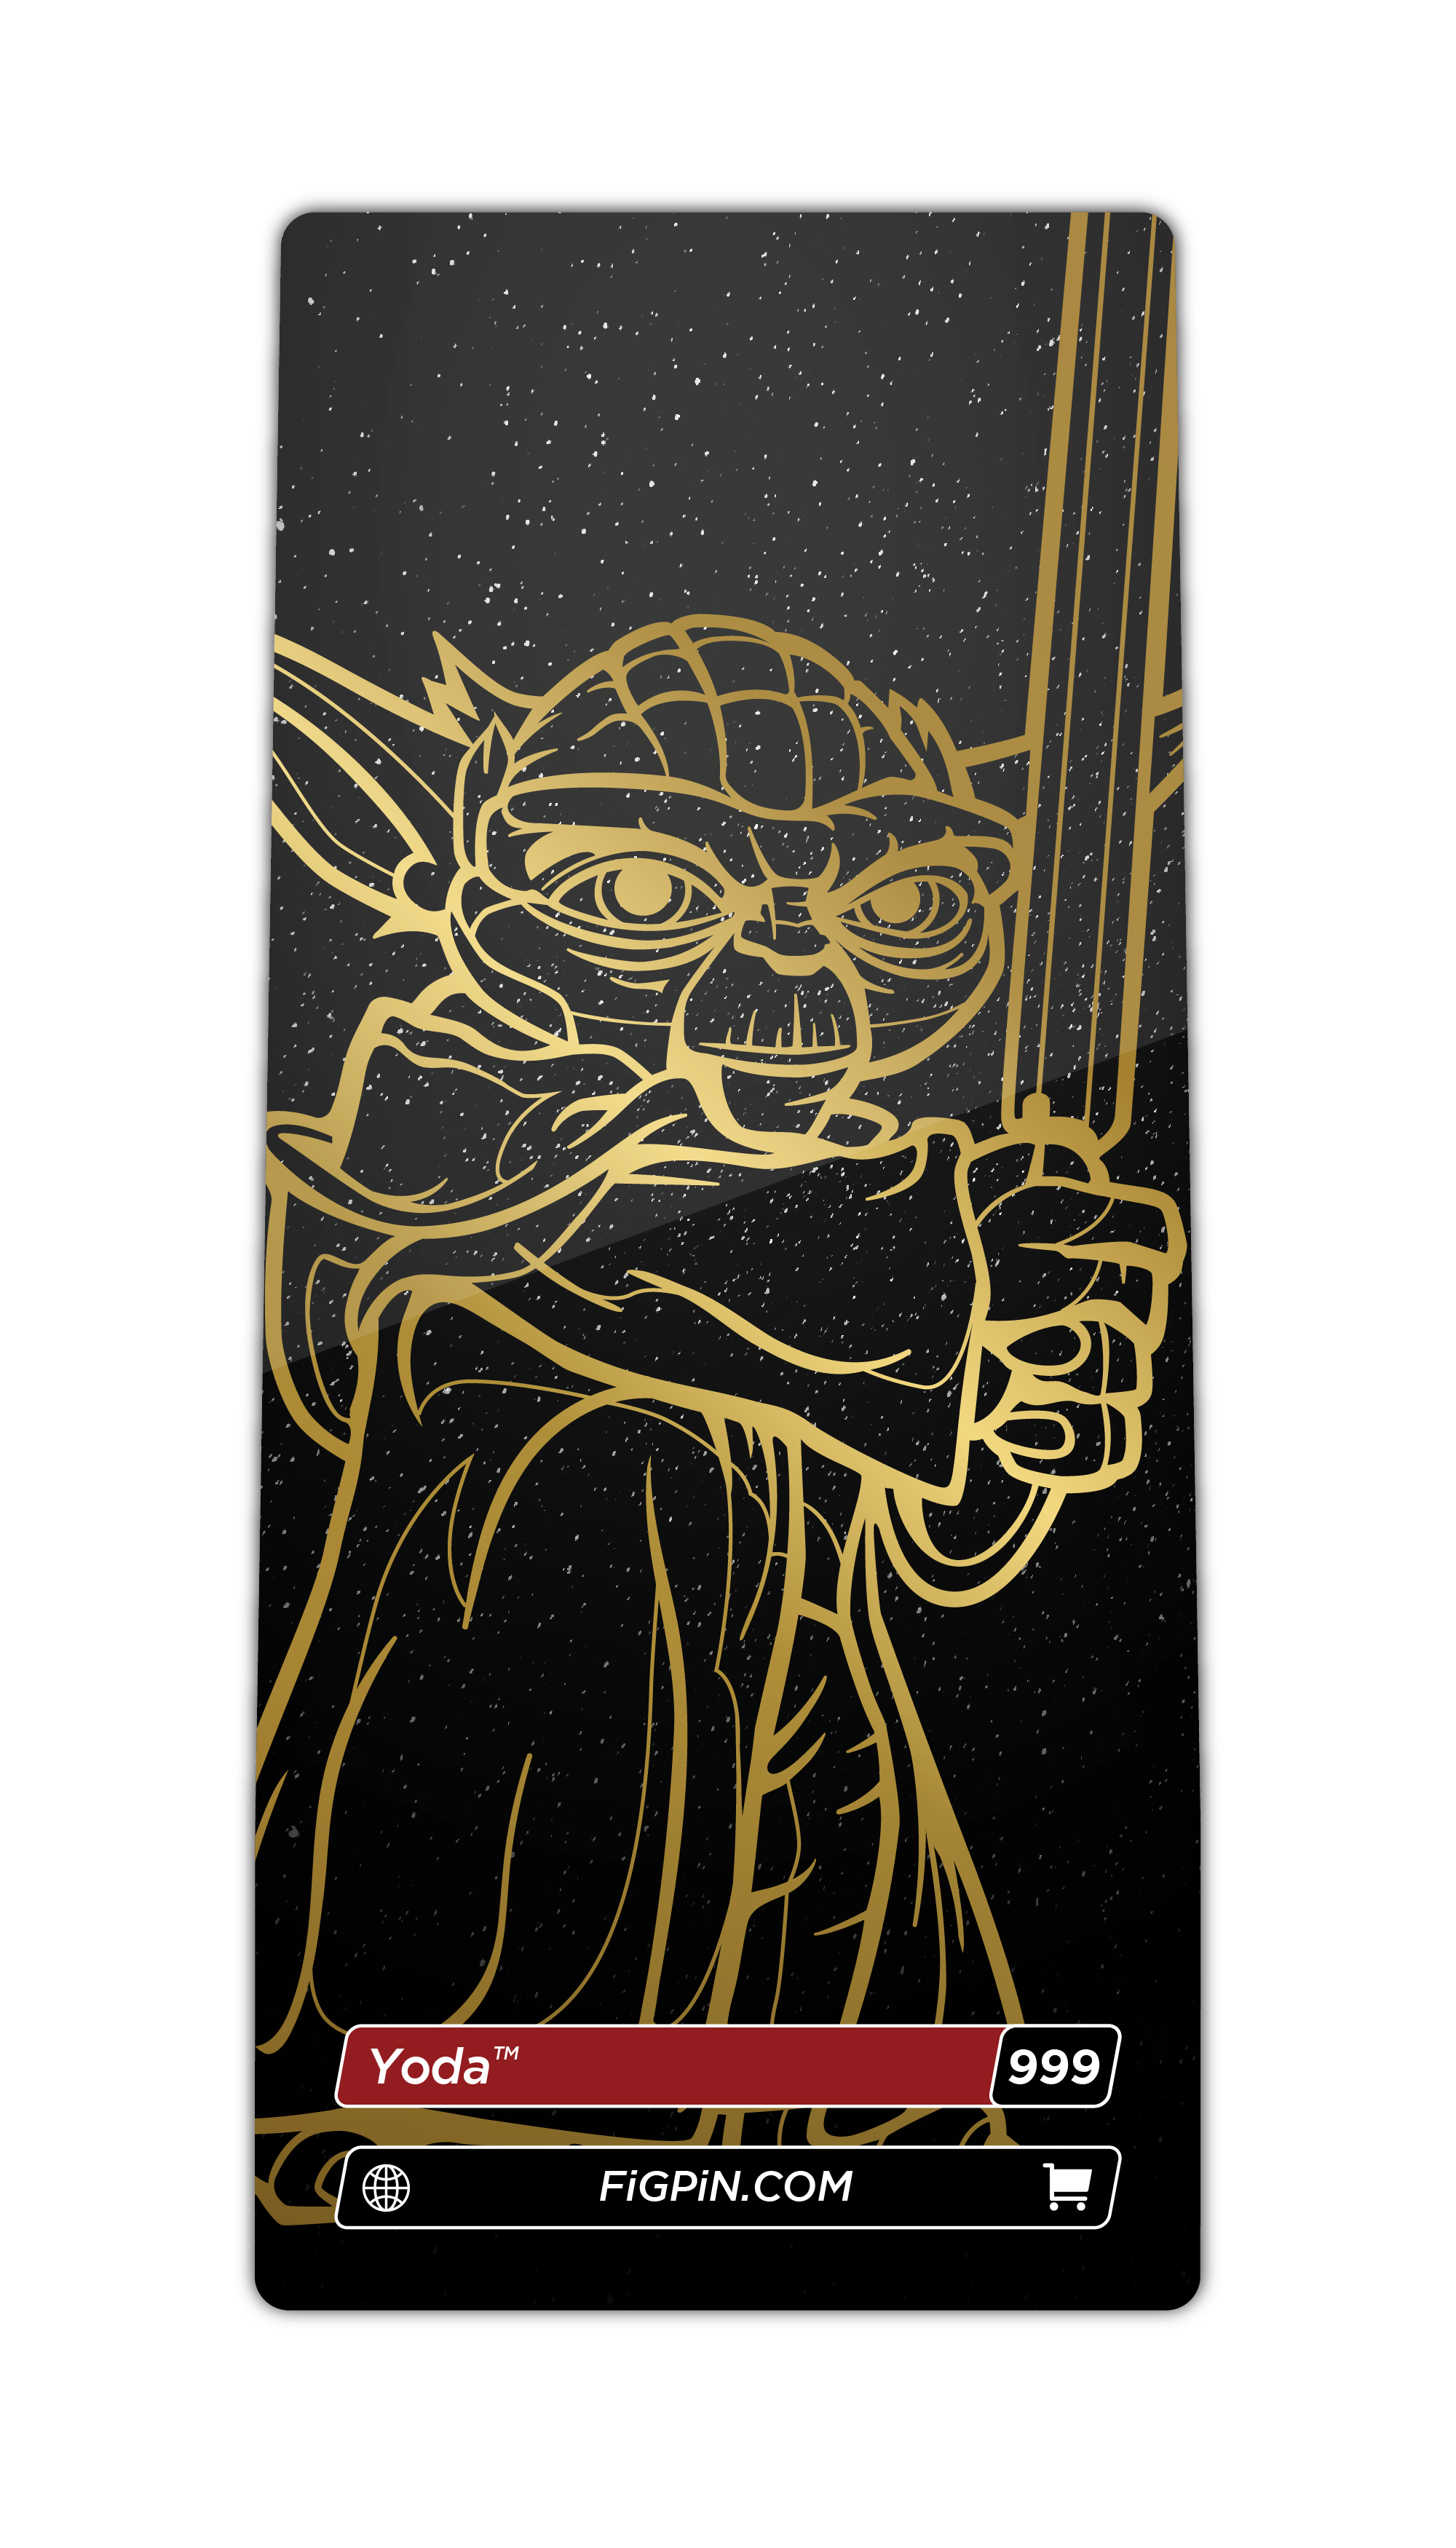 Yoda (999)